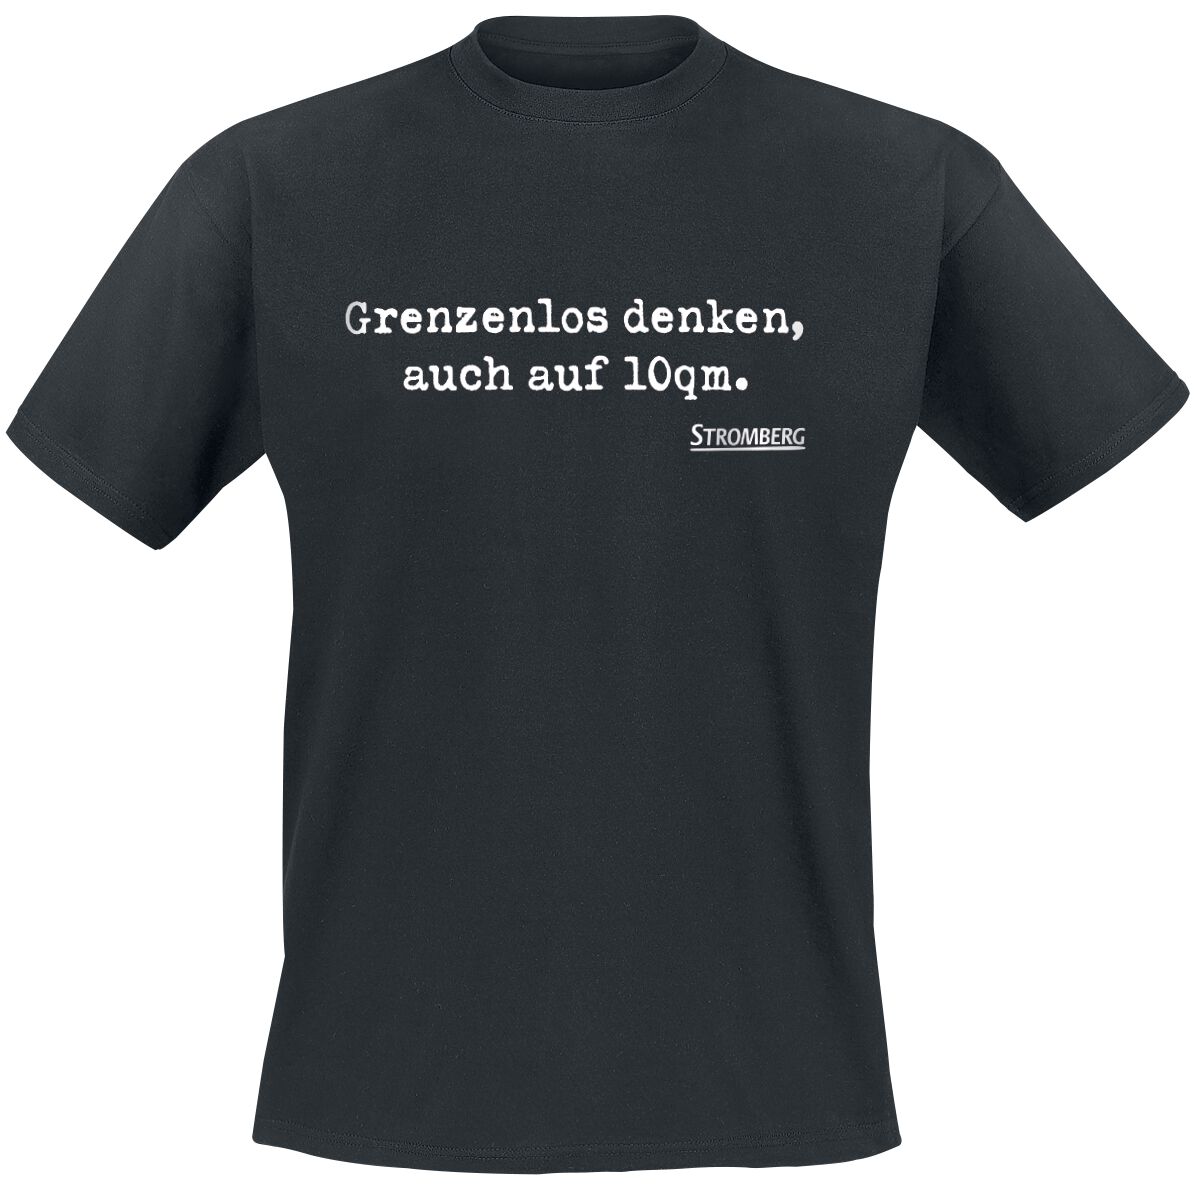 Grenzenlos denken auch auf 10qm. T-Shirt schwarz von Stromberg